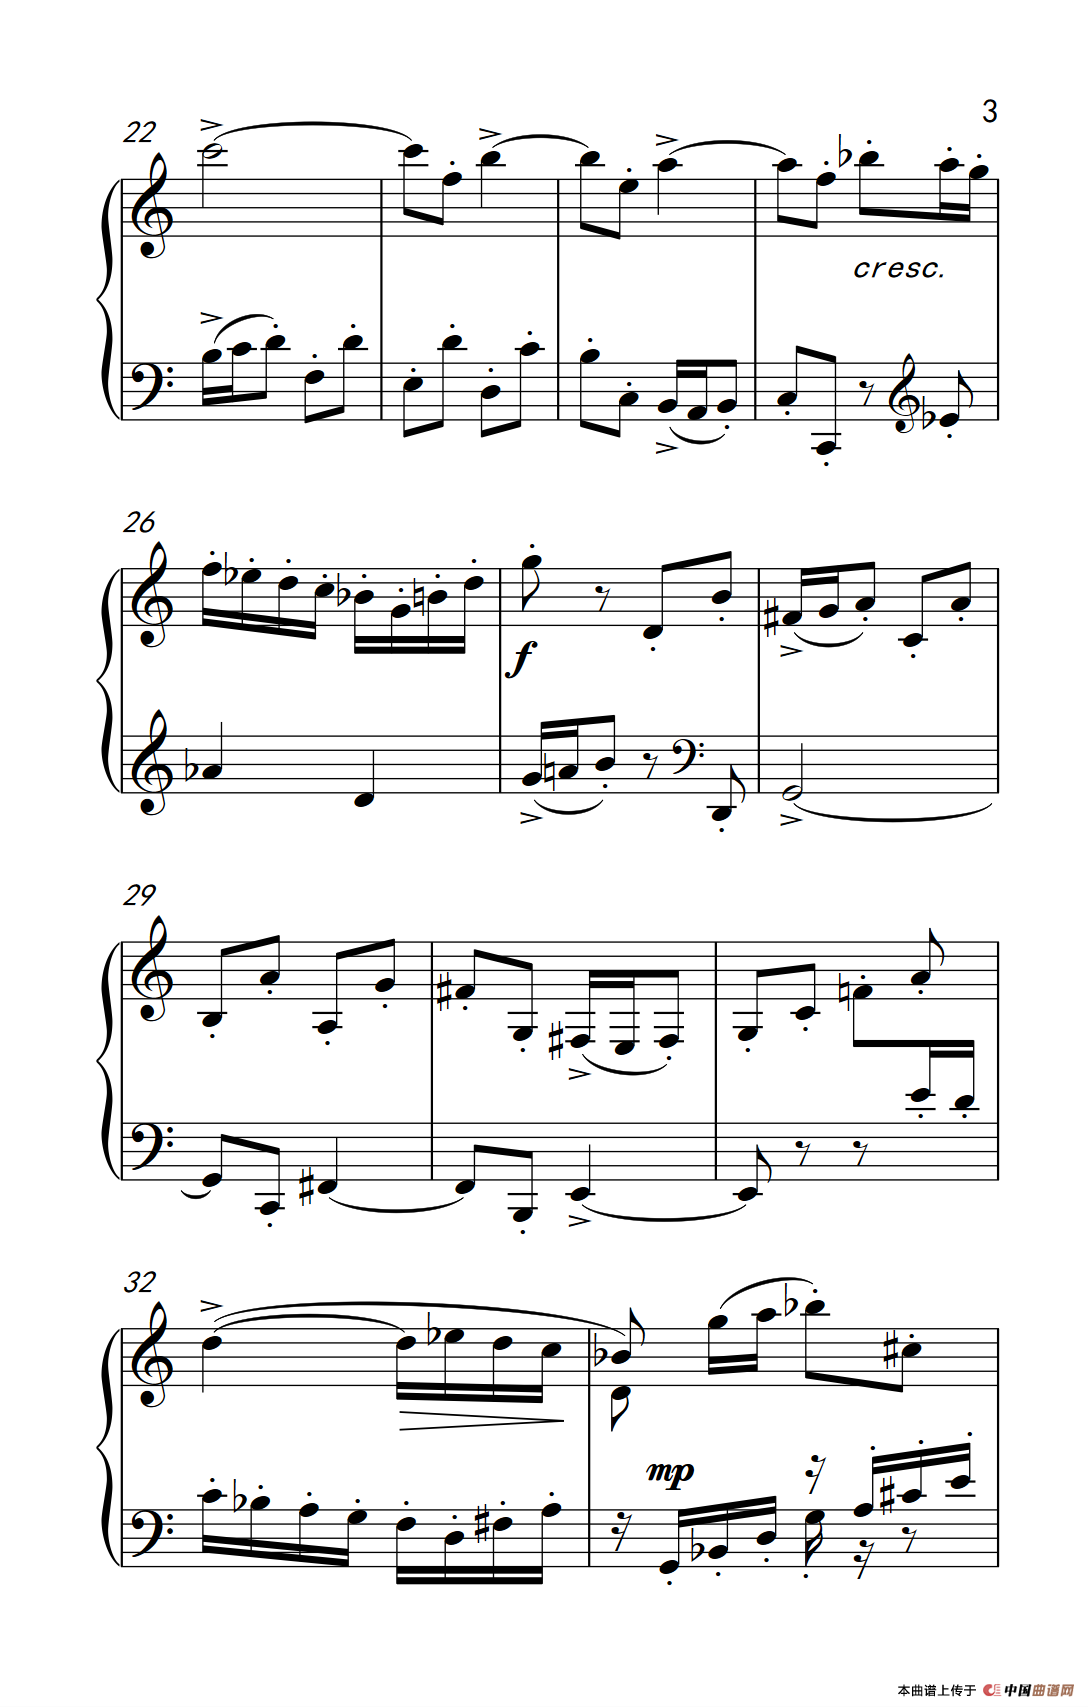 第九级2.赋格曲 Op.87 No.2（中央音乐学院 钢琴（业